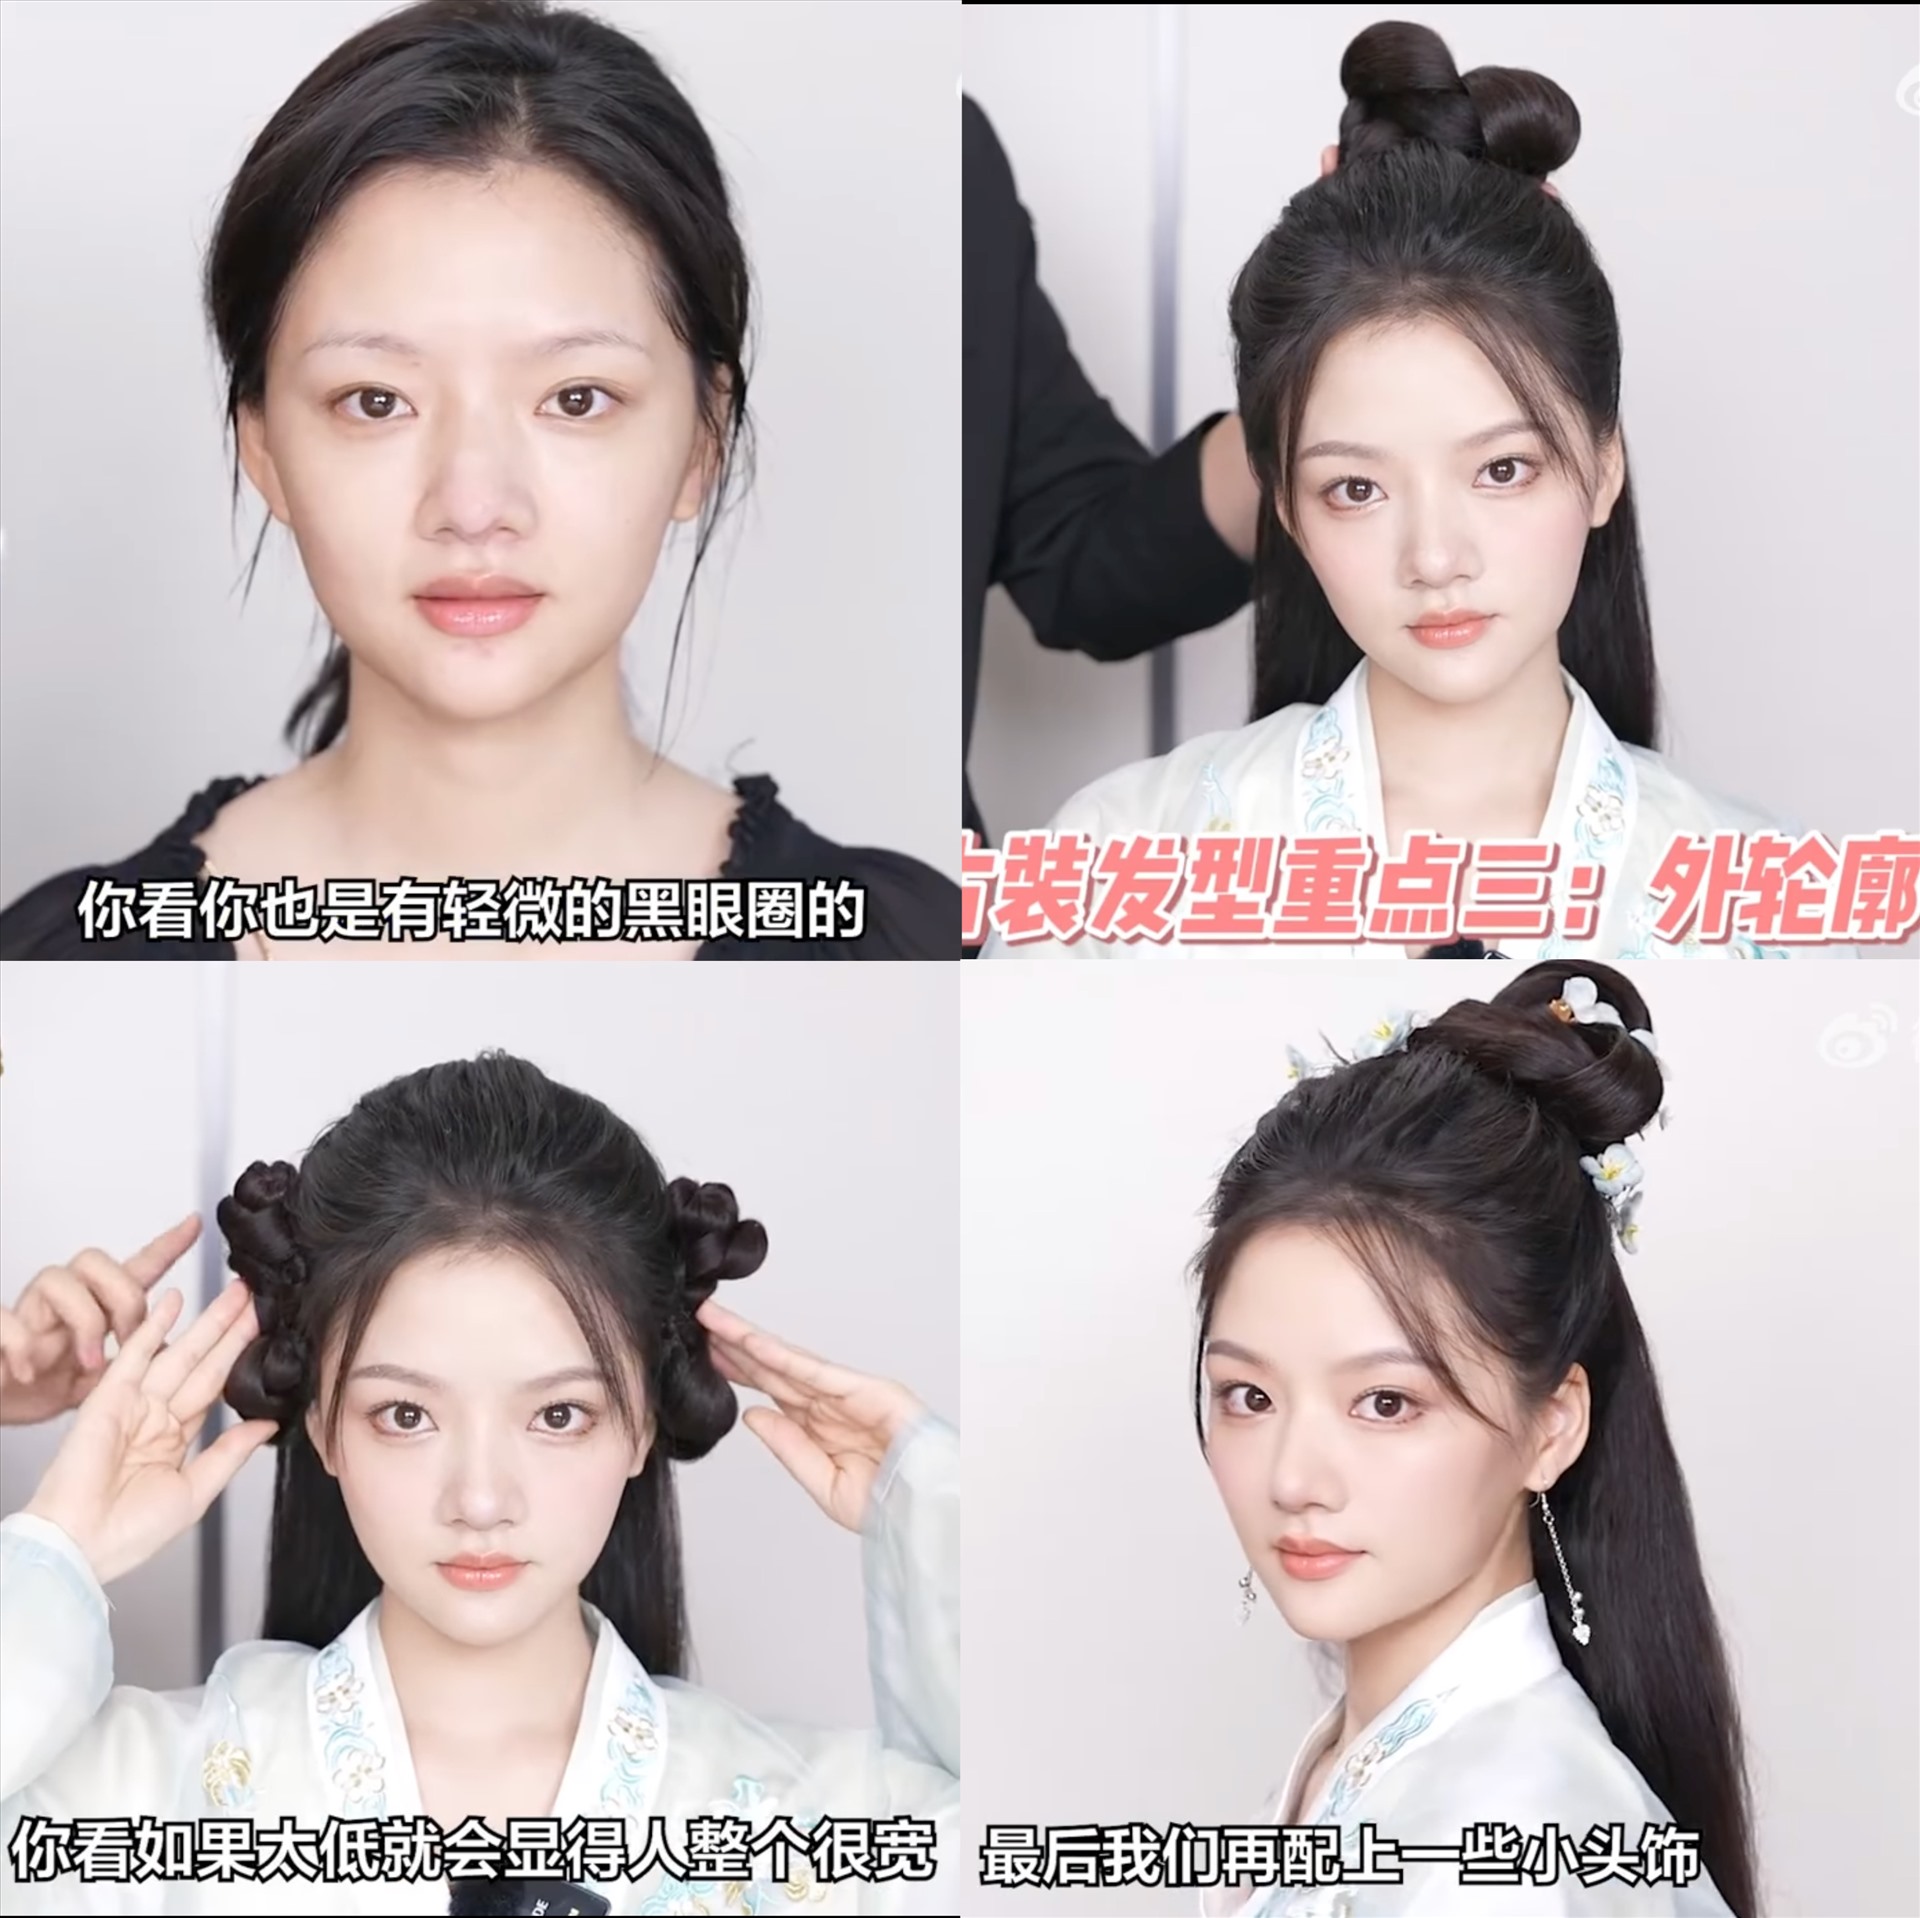 Nhậm Mẫn trong video trang điểm theo phong cách cổ trang tiên hiệp. Ảnh: Weibo